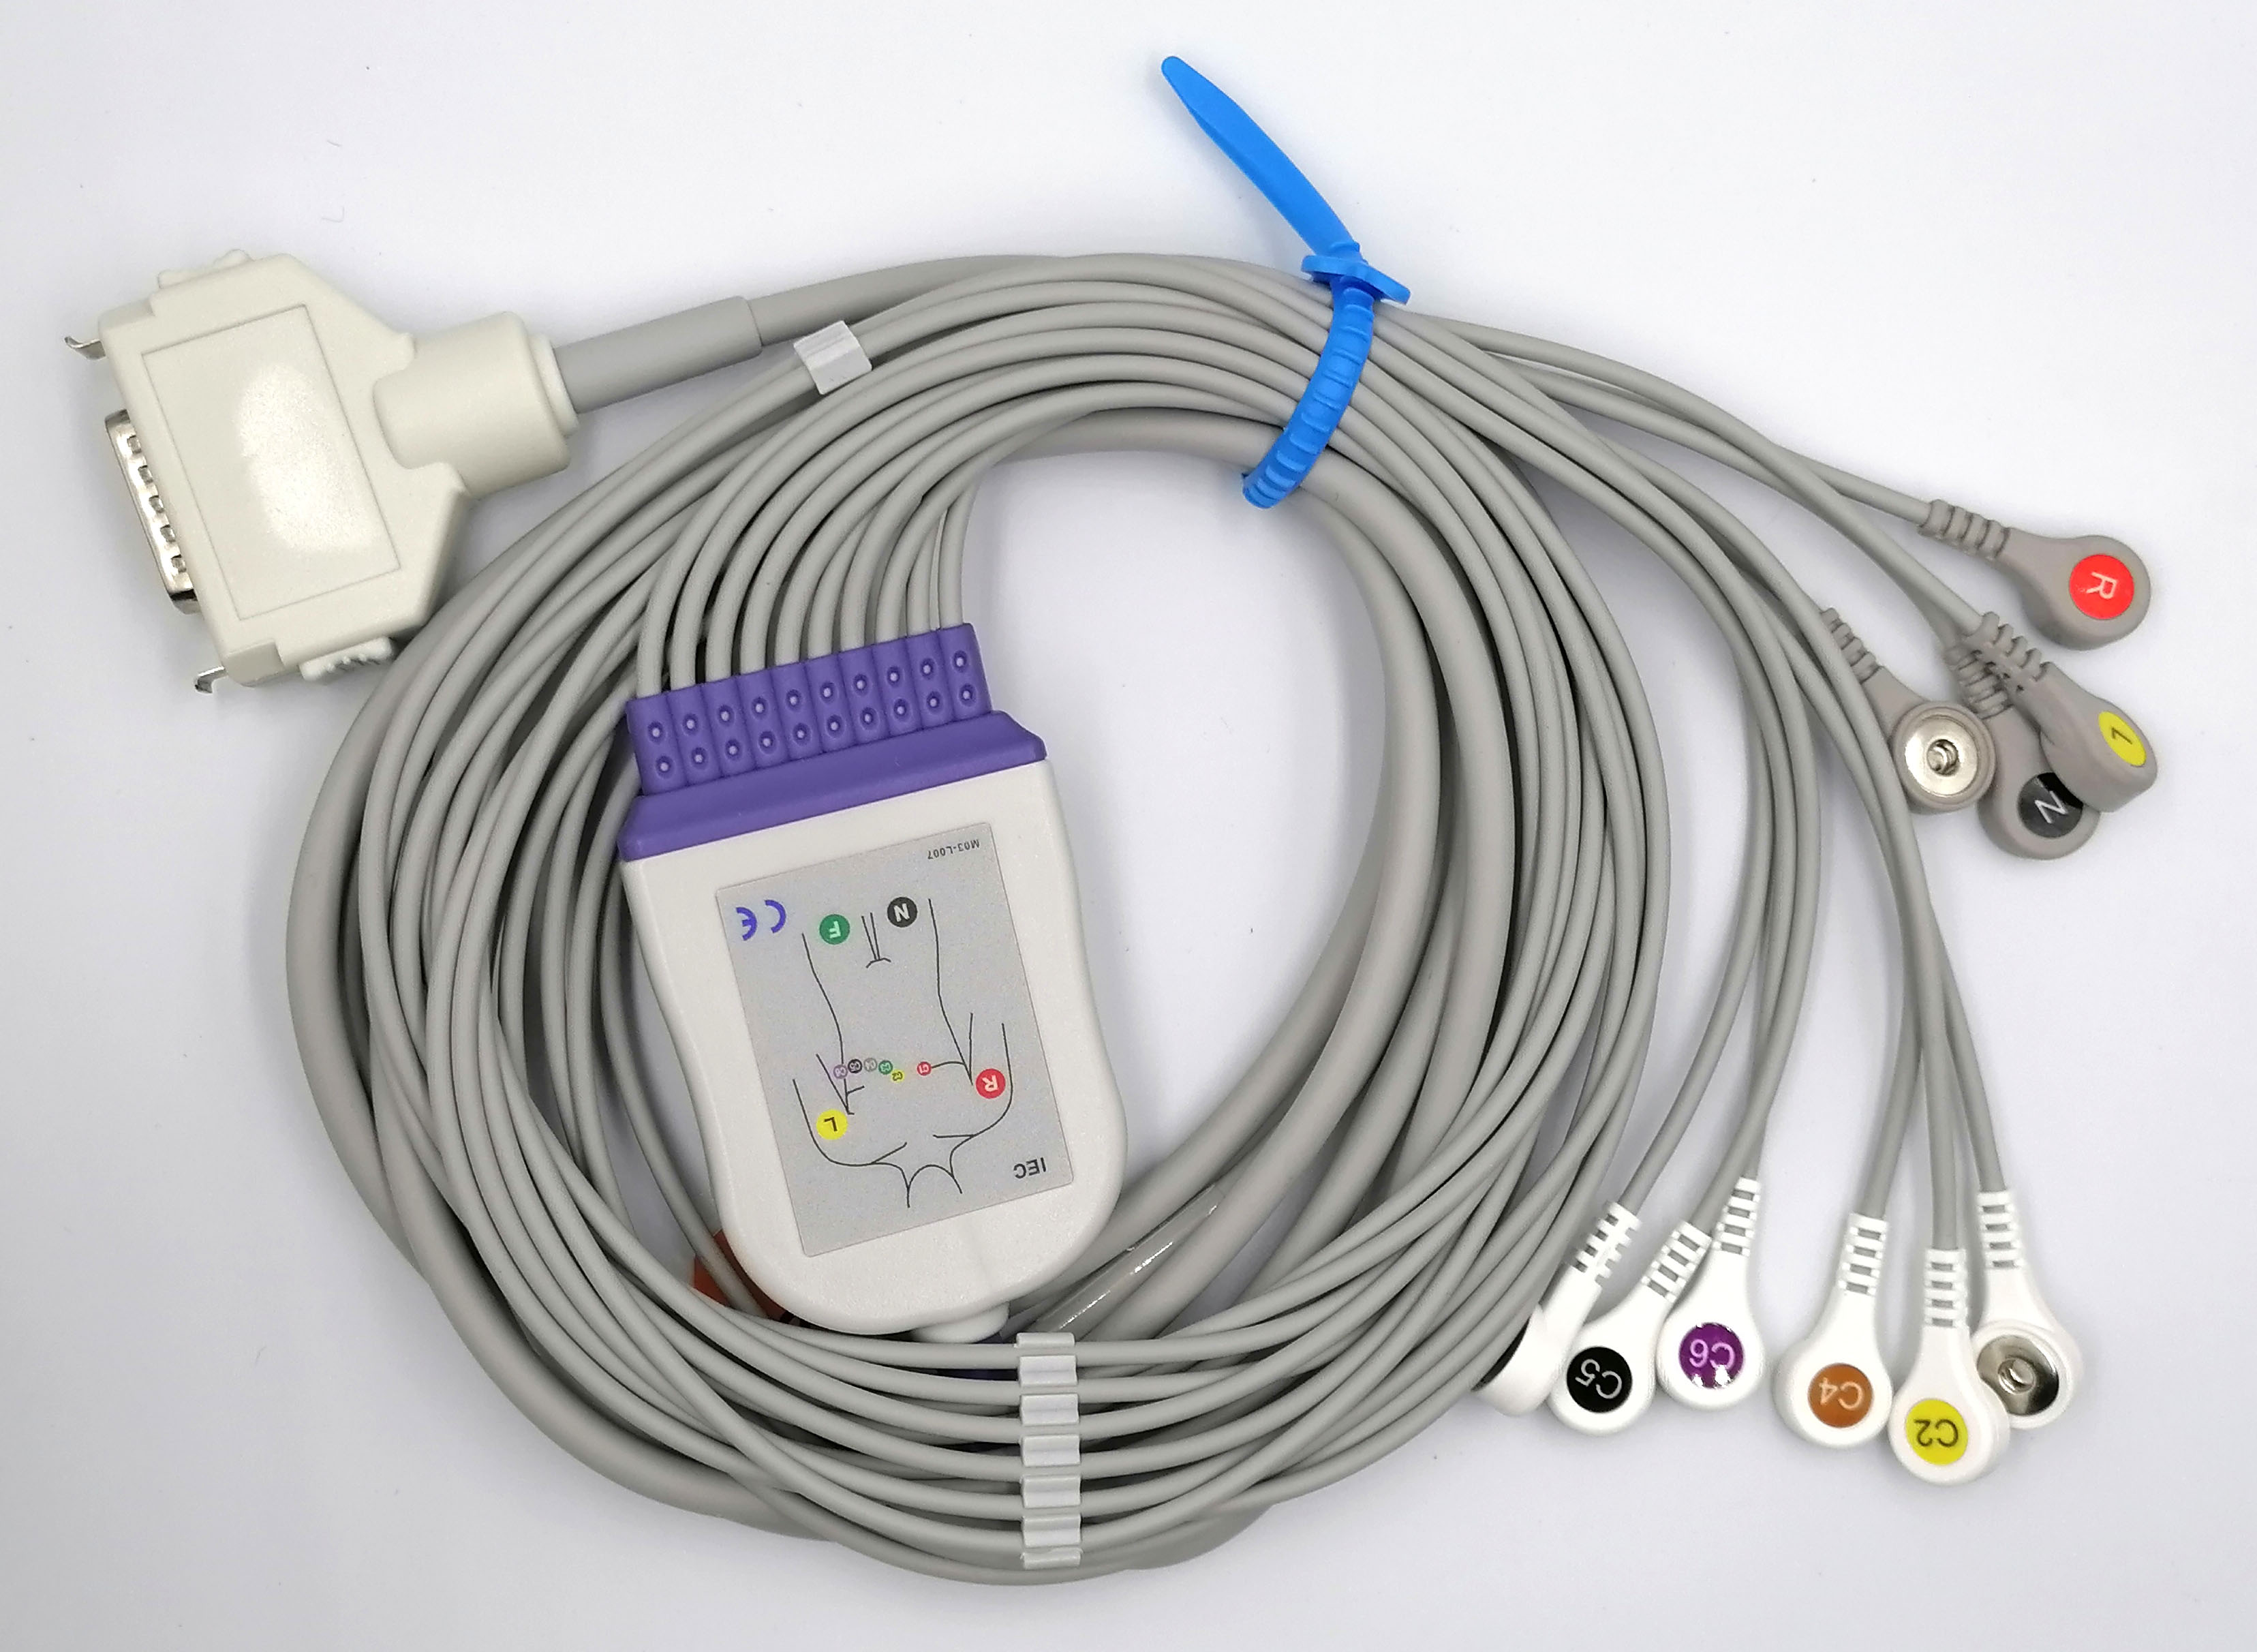 ЭКГ кабель пациента для электрокардиографа Fukuda Denshi с кнопками Snap для одноразовых электродов